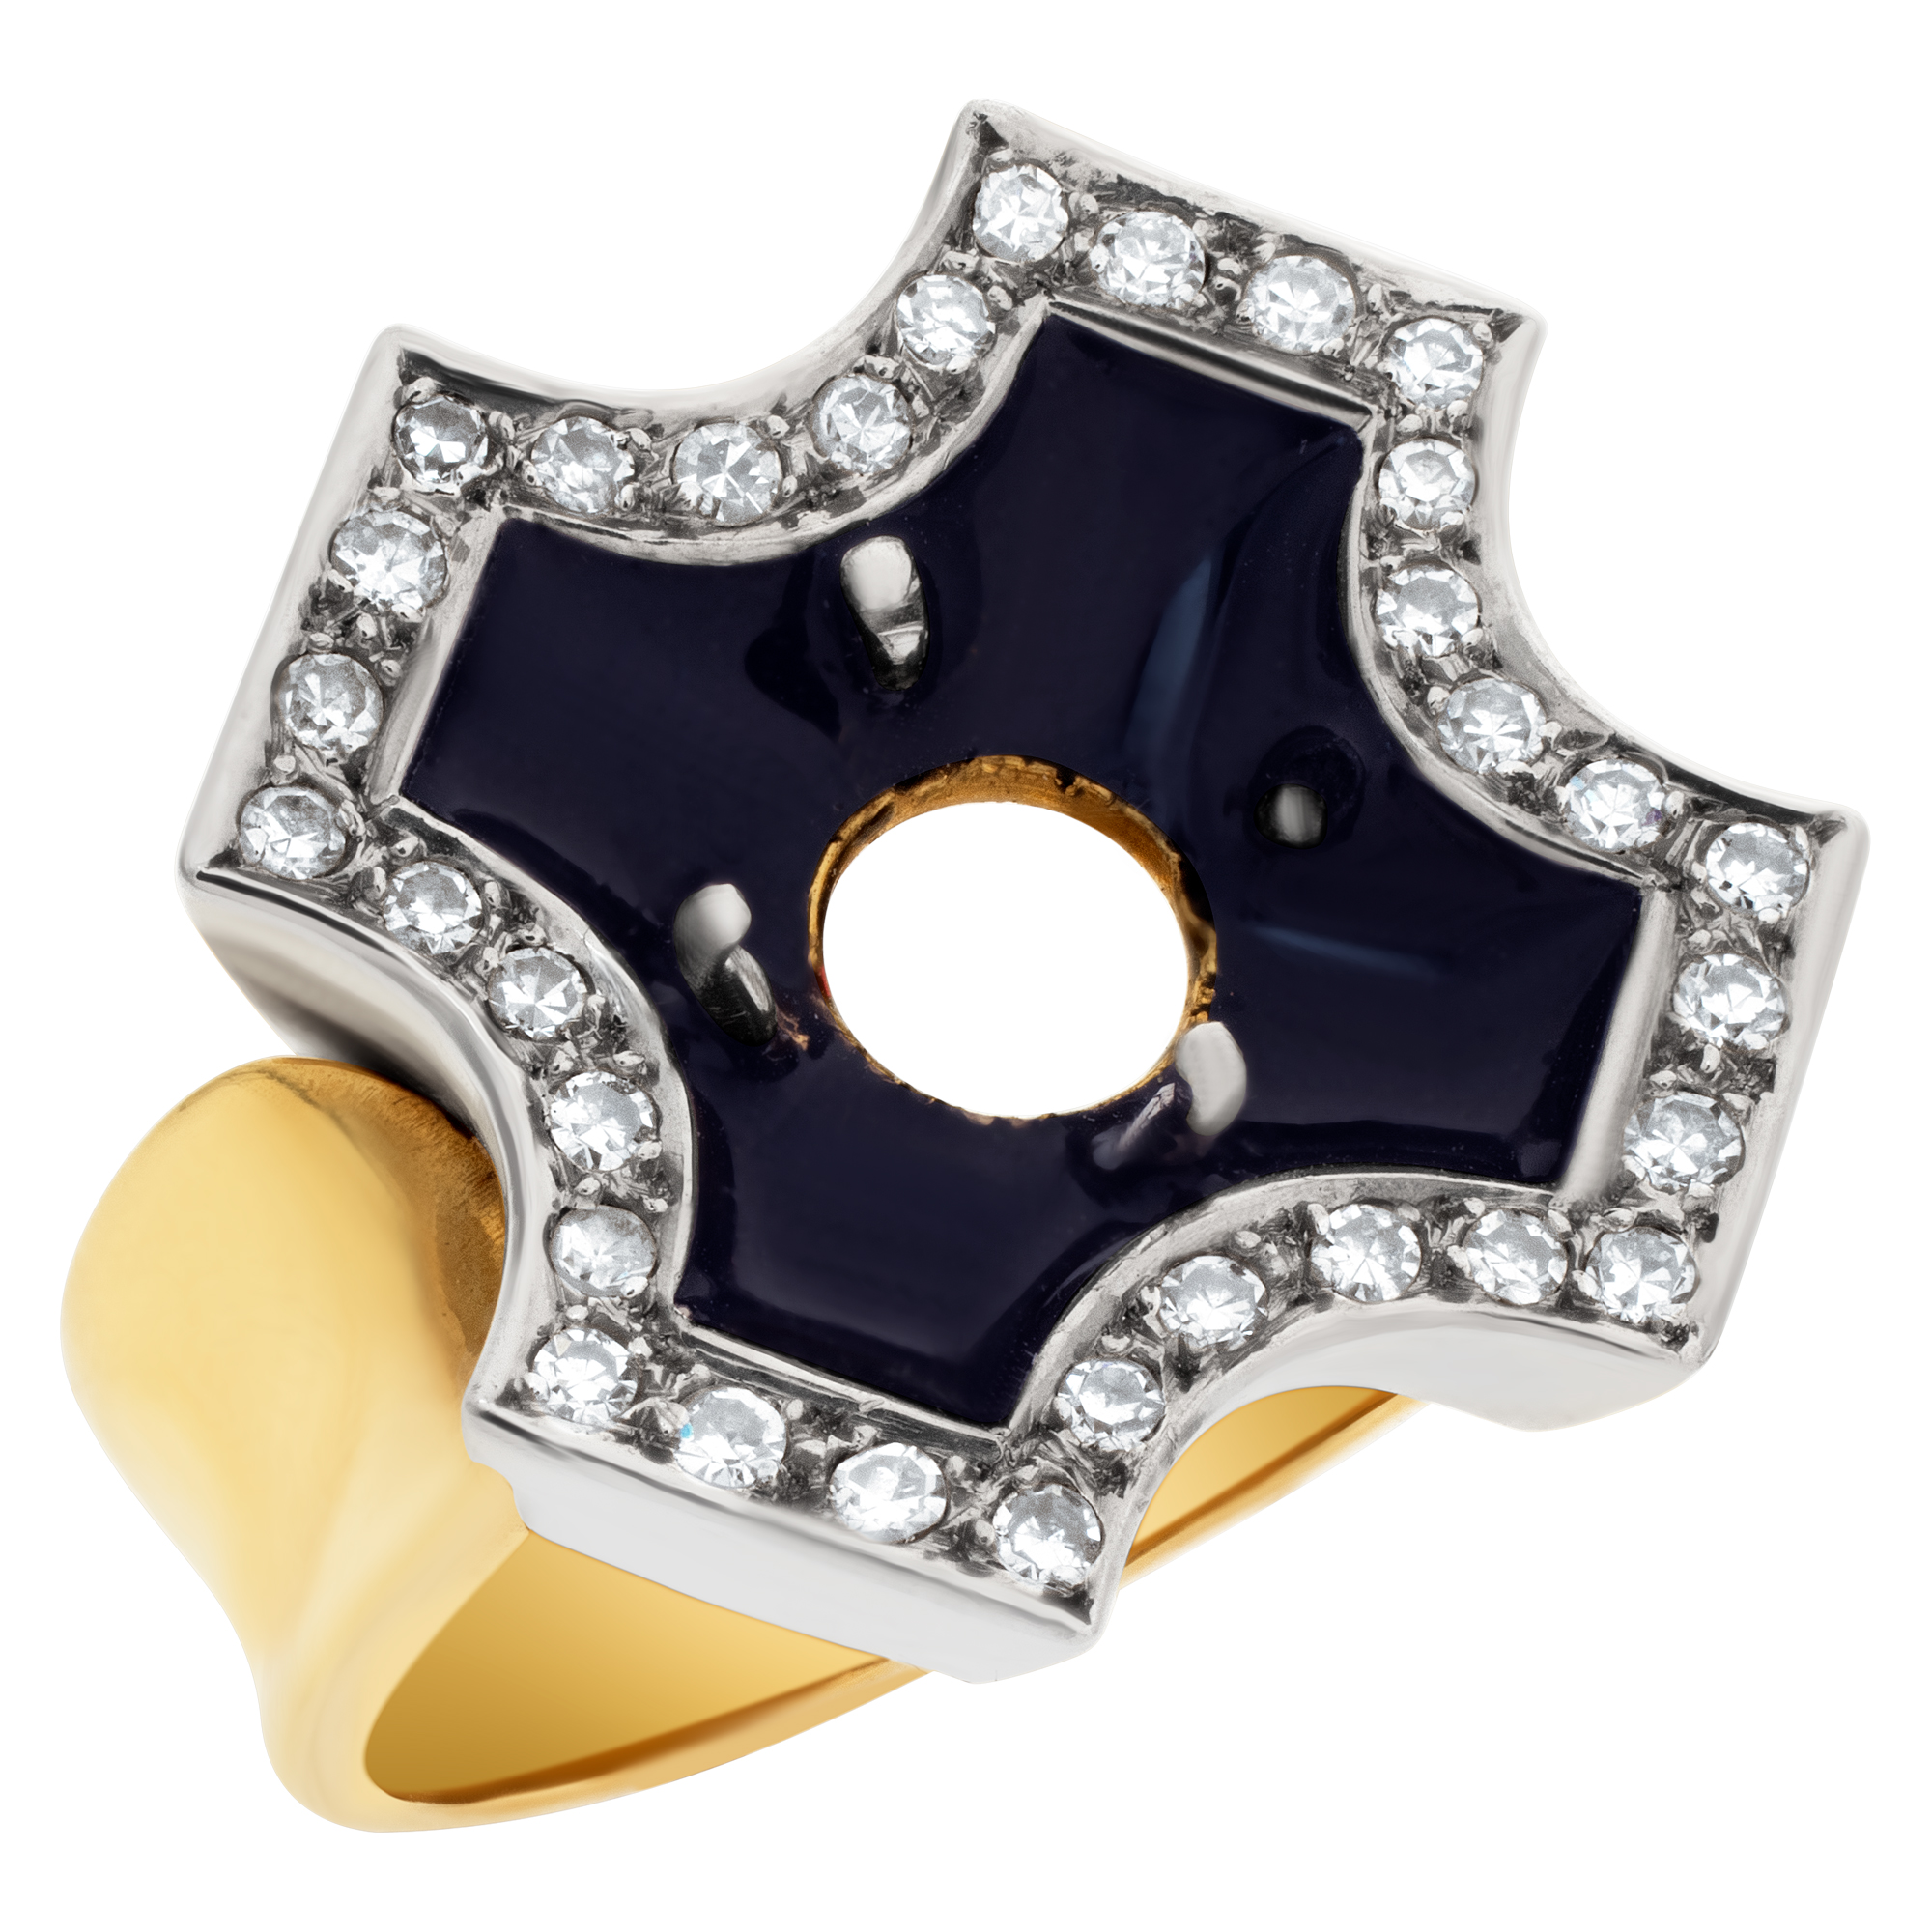 Black enamel Maltese cross design setting in 18k with 0.50 carats in diamonds image 3